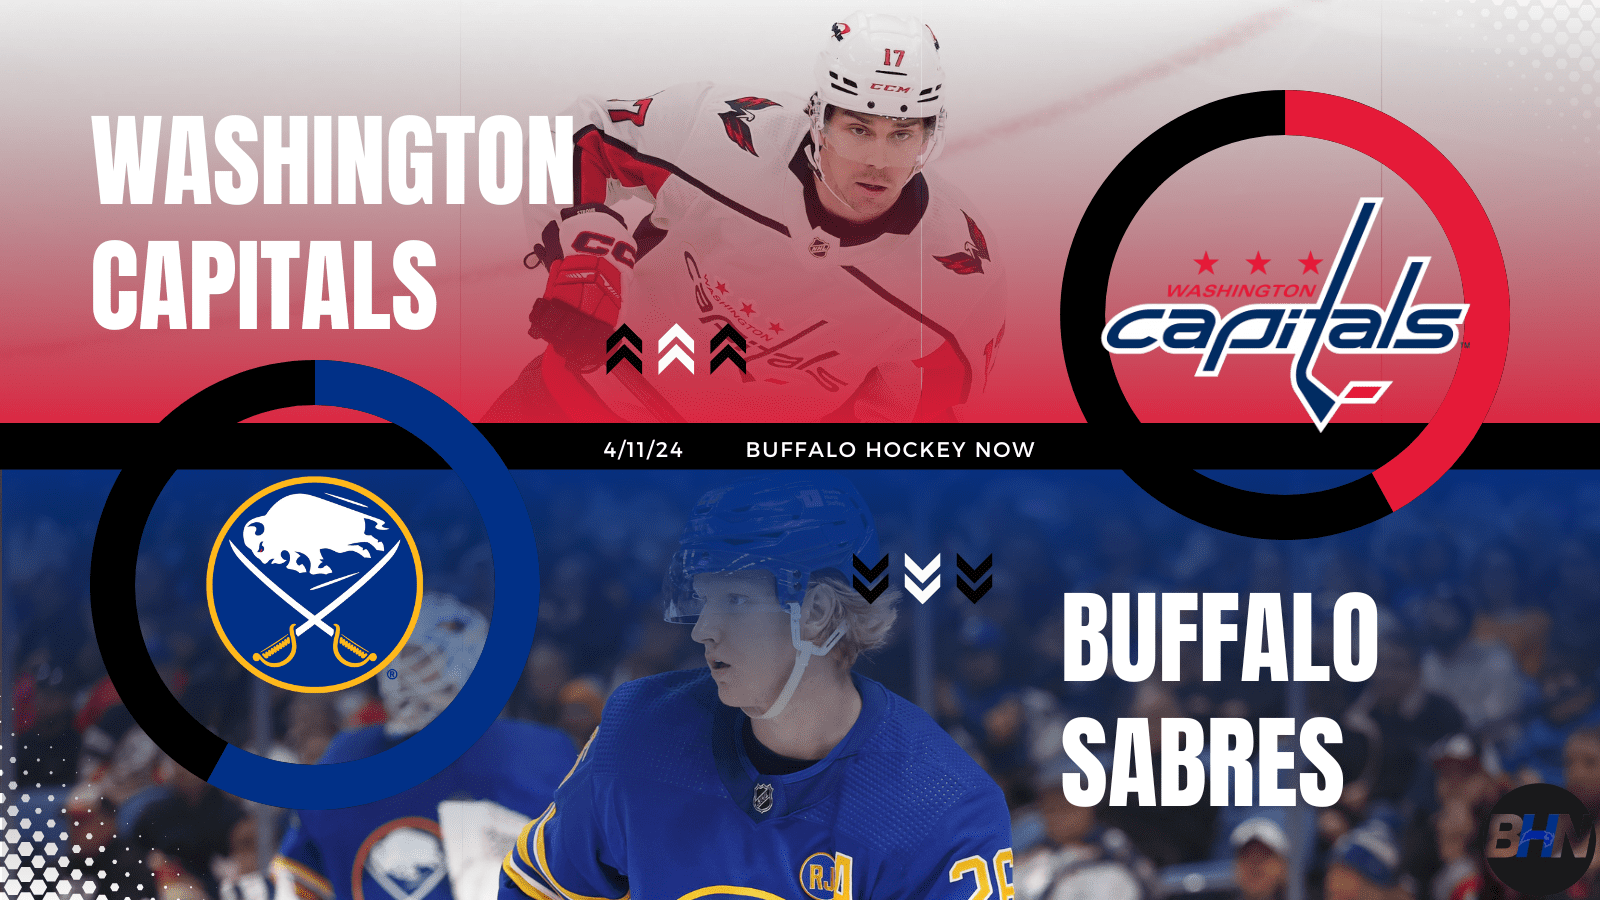 Washington Capitals Buffalo Sabres game preview